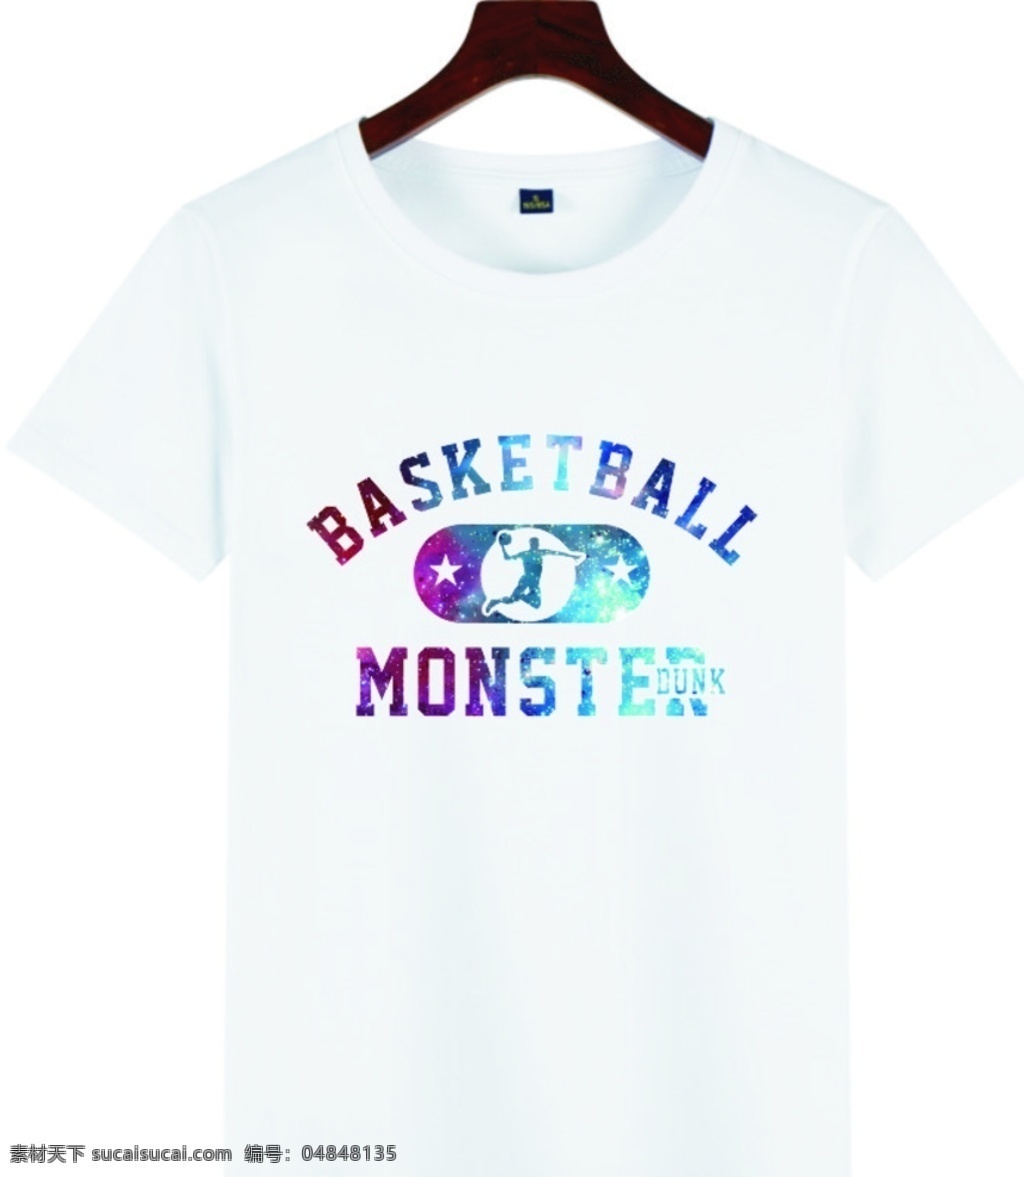 原创 篮球 t 恤 星空 款 nba篮球 篮球图案 篮球服图案 t恤印花 高清矢量图